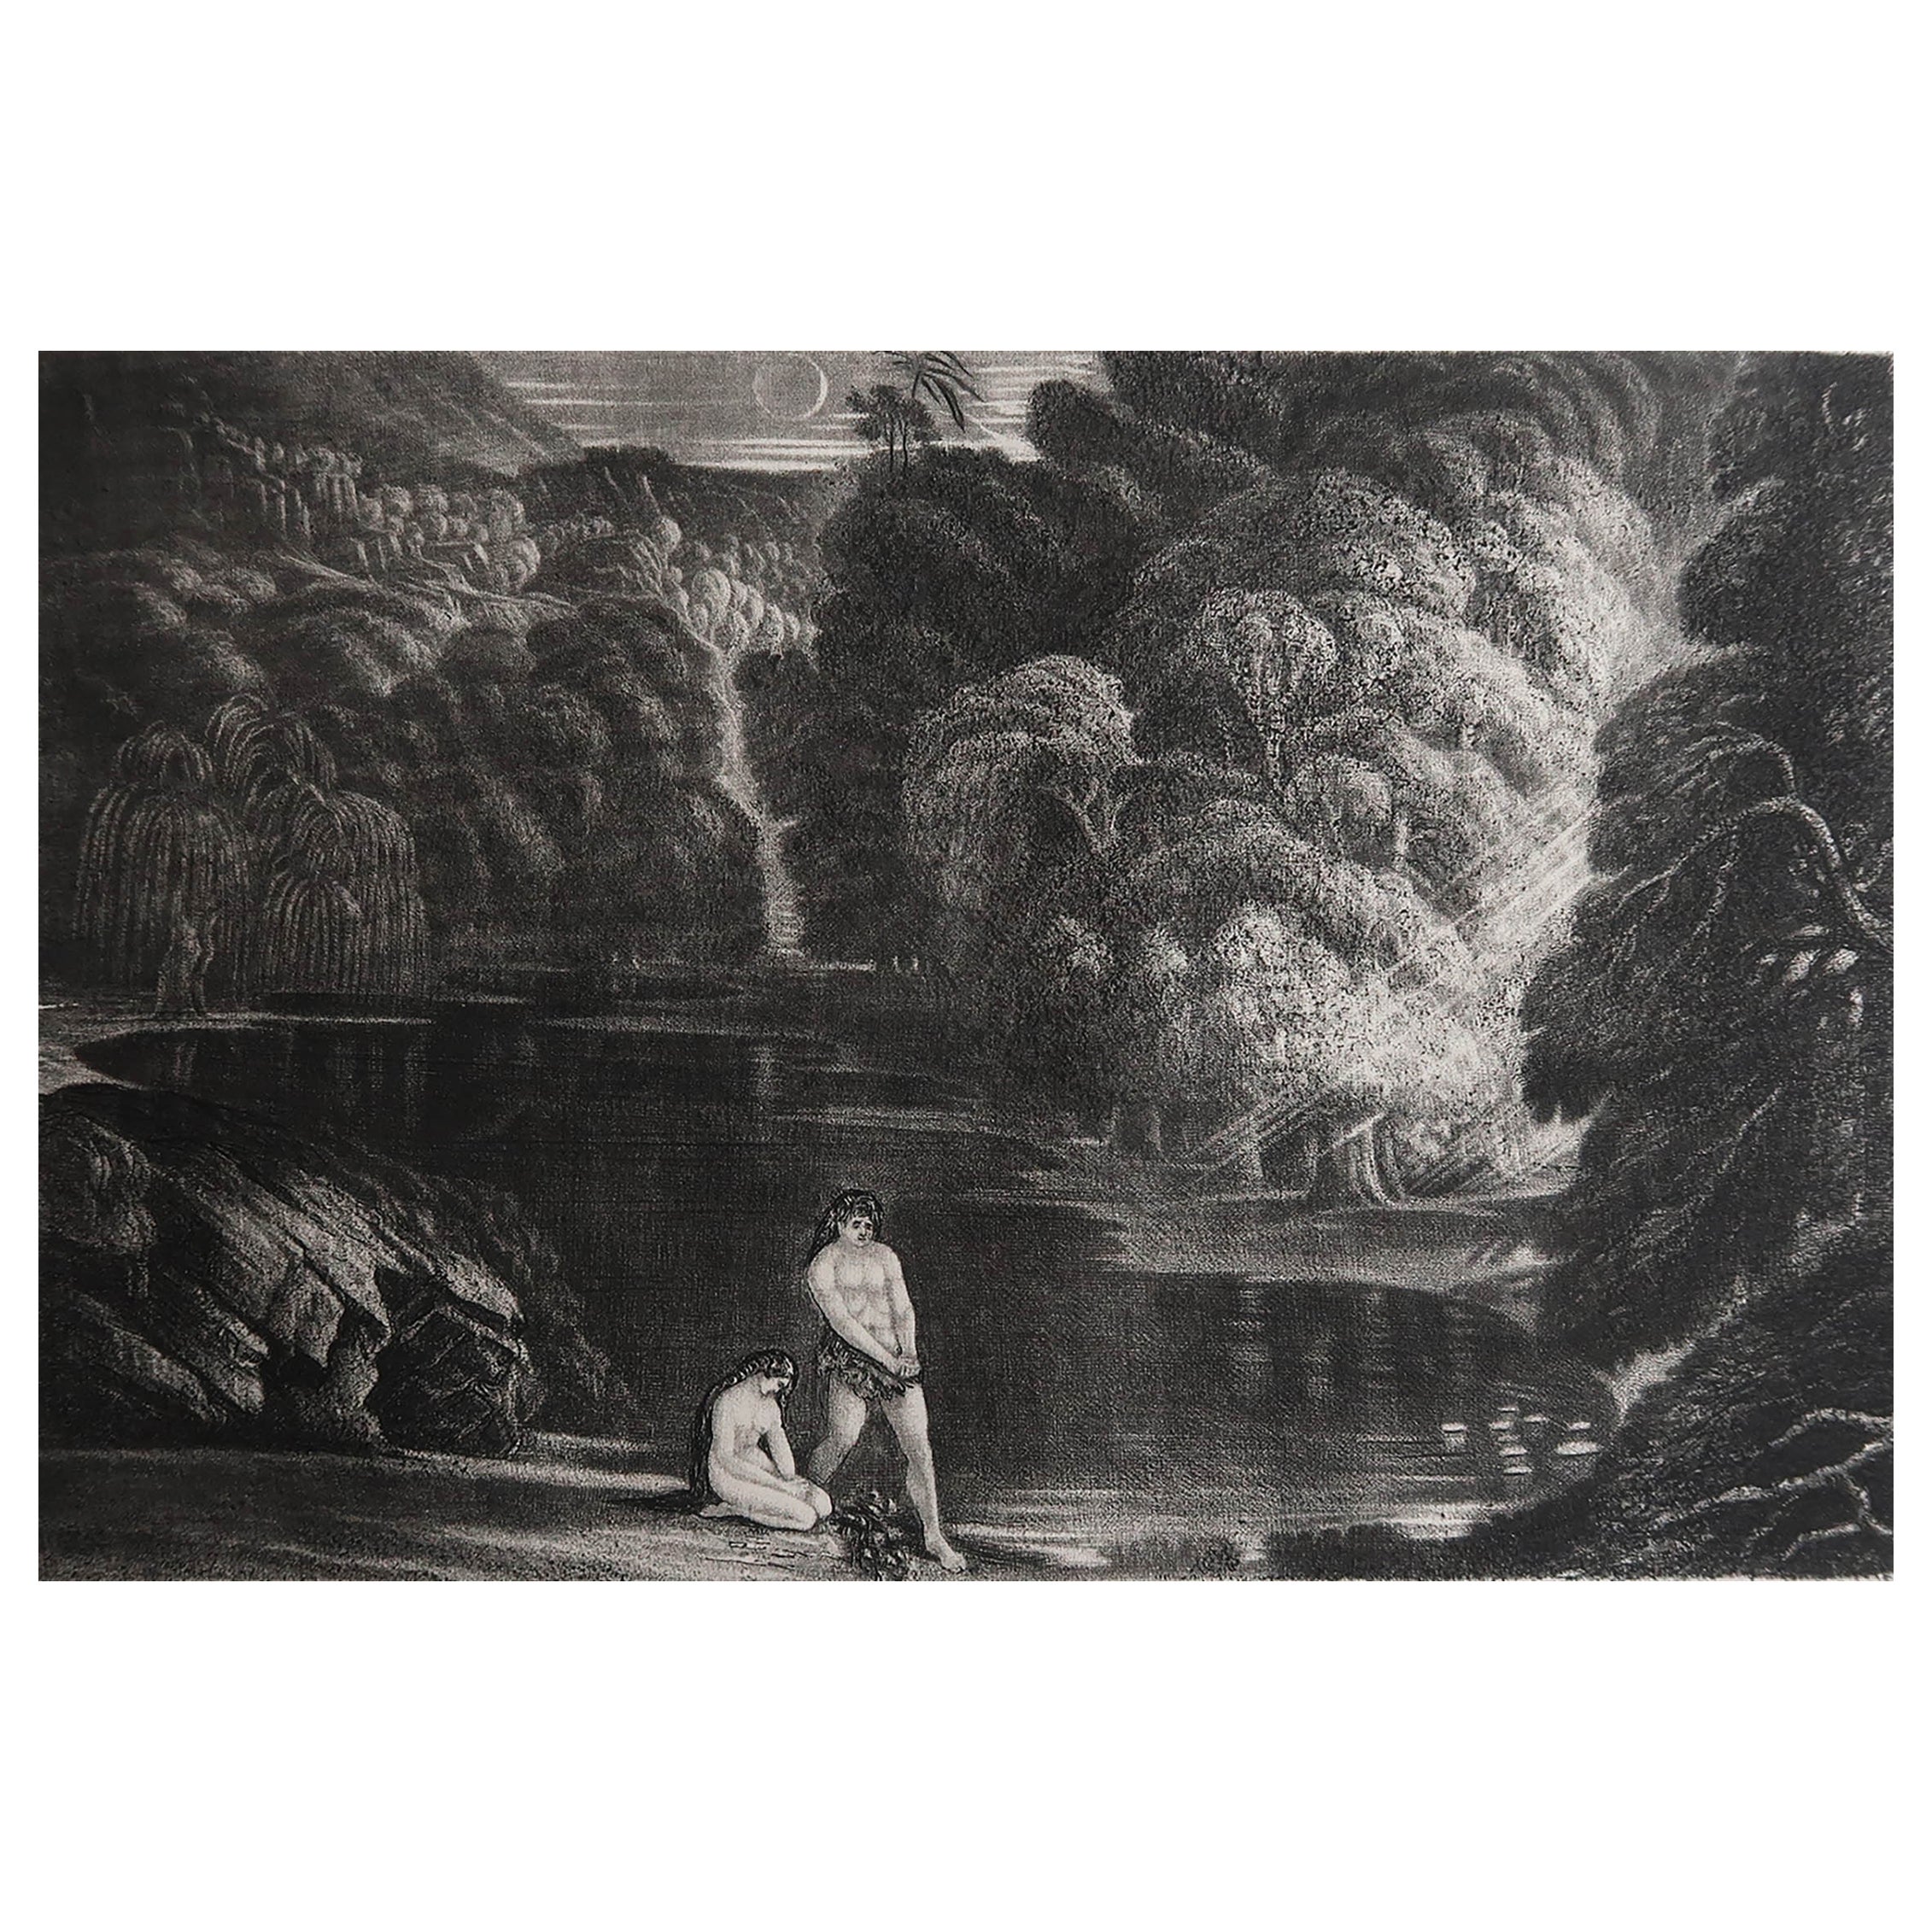 Schabkunstwerk von John Martin, The Judgement of the Almighty, Sangster, um 1850